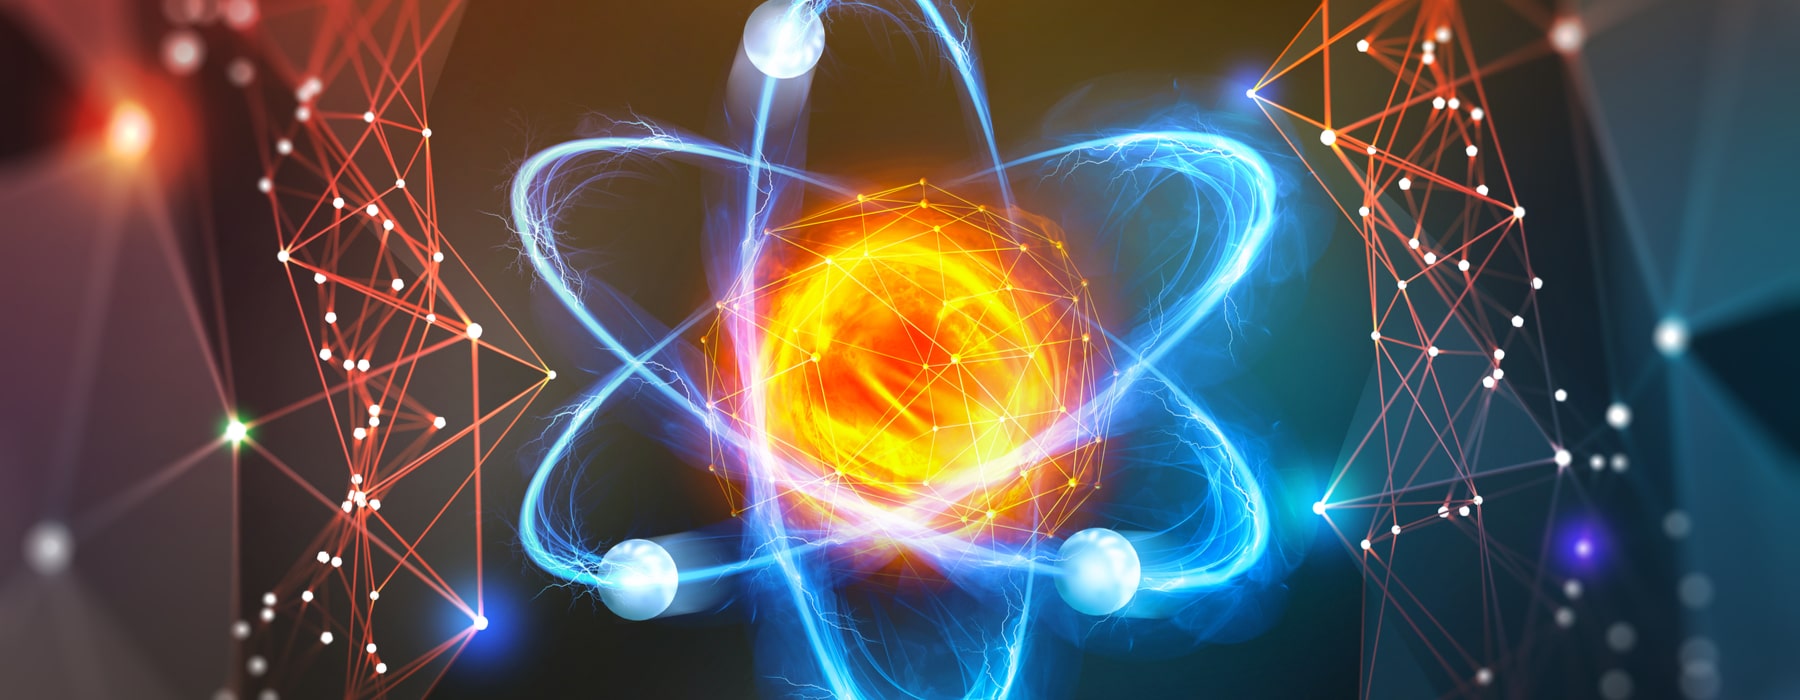 Атом высокой энергии. Атомик Энерджи Энергетик. Атомная Энергетика. Энергия атома. Будущее атомной энергетики.